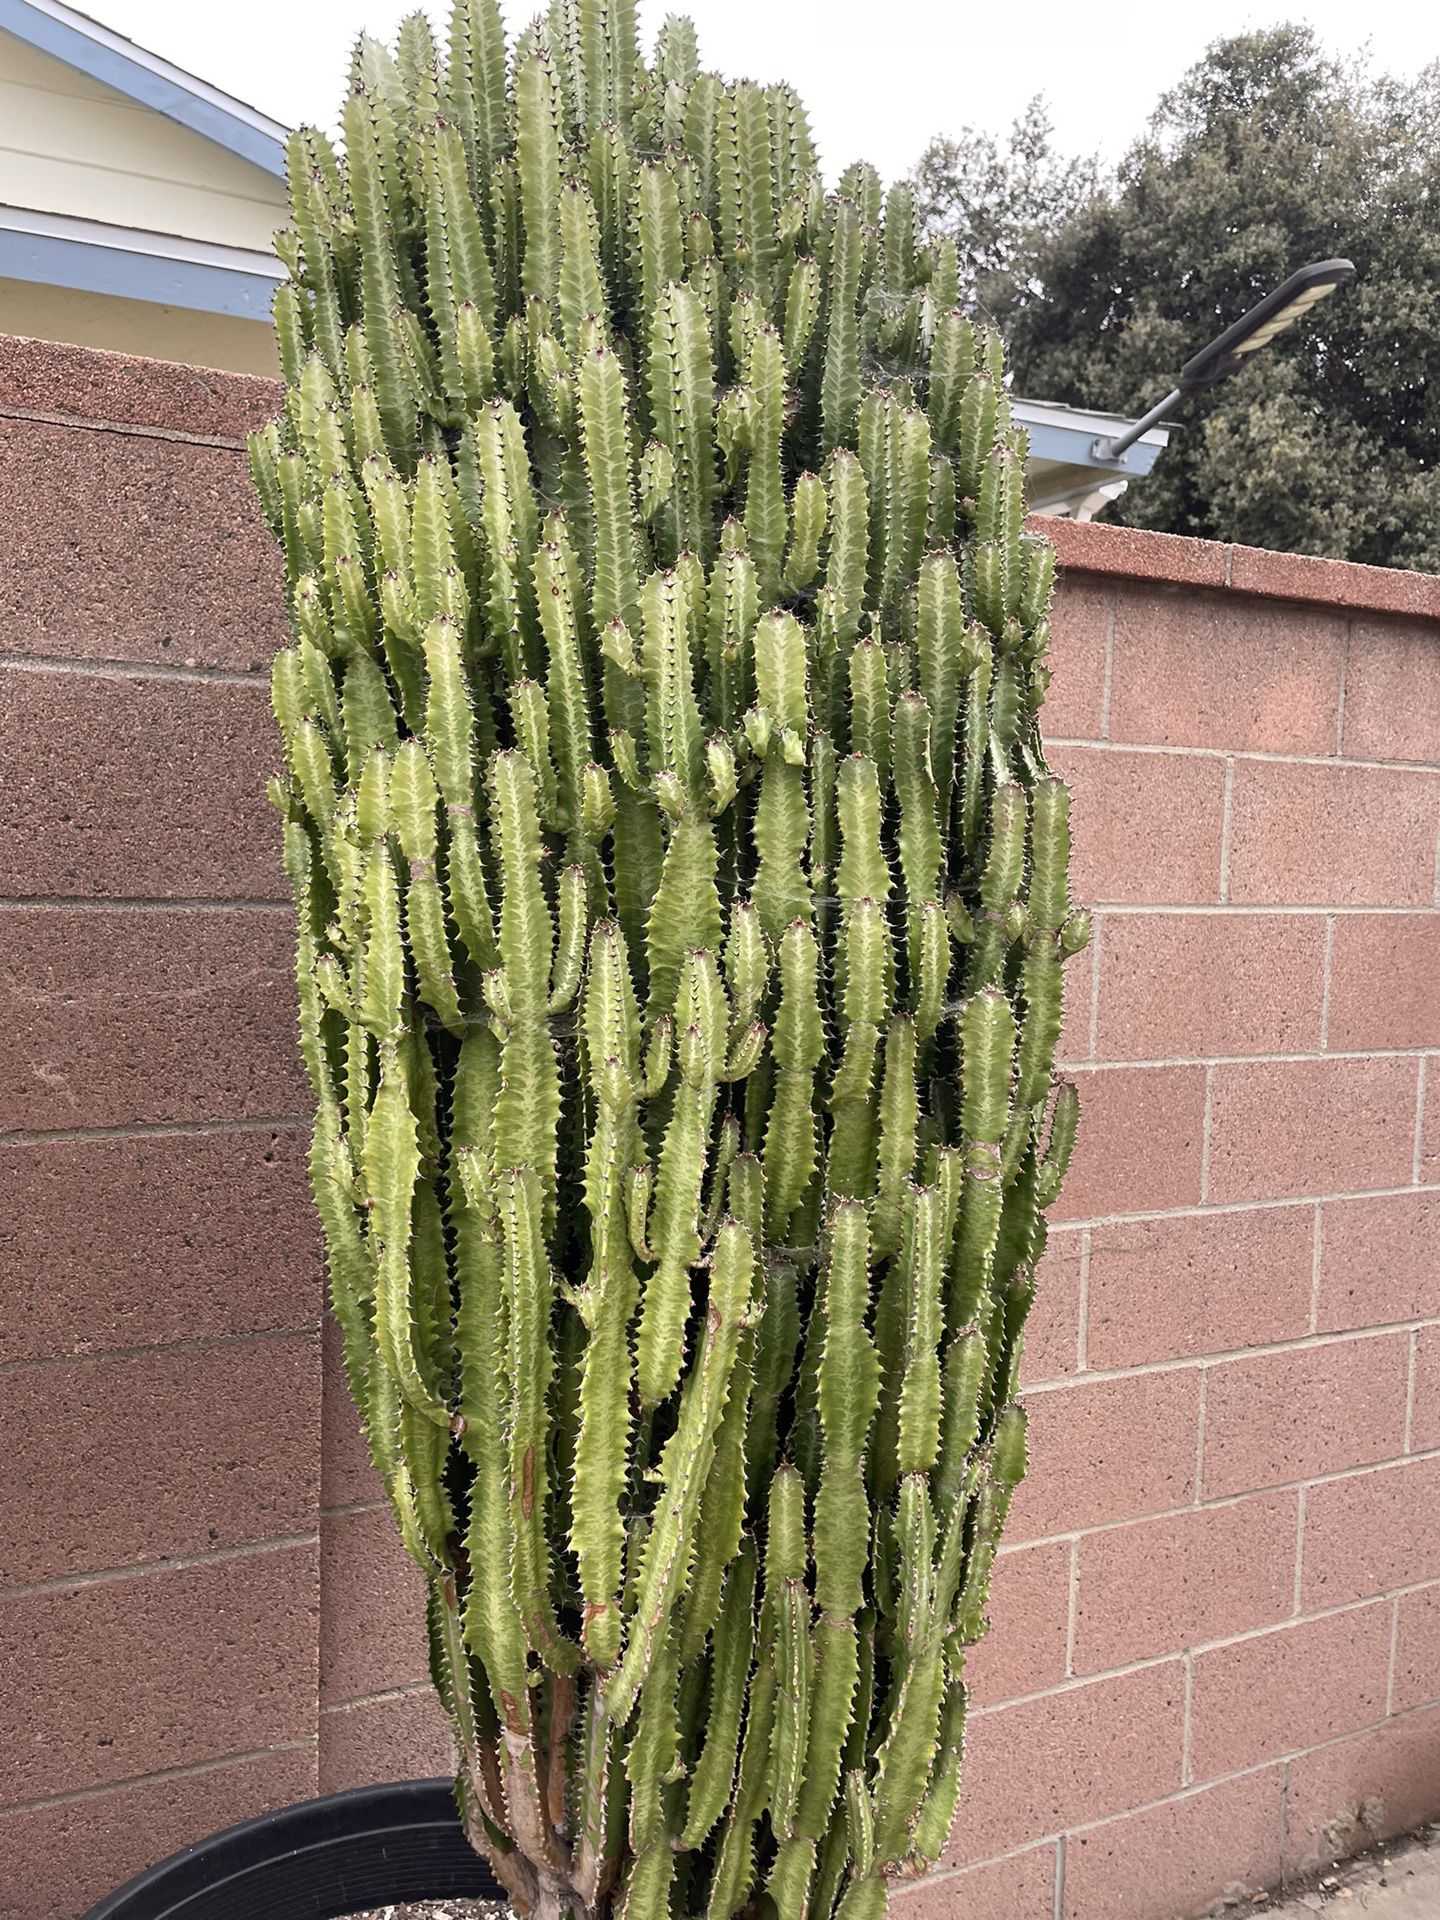 Euphorbia Cactus Plant Huge $60